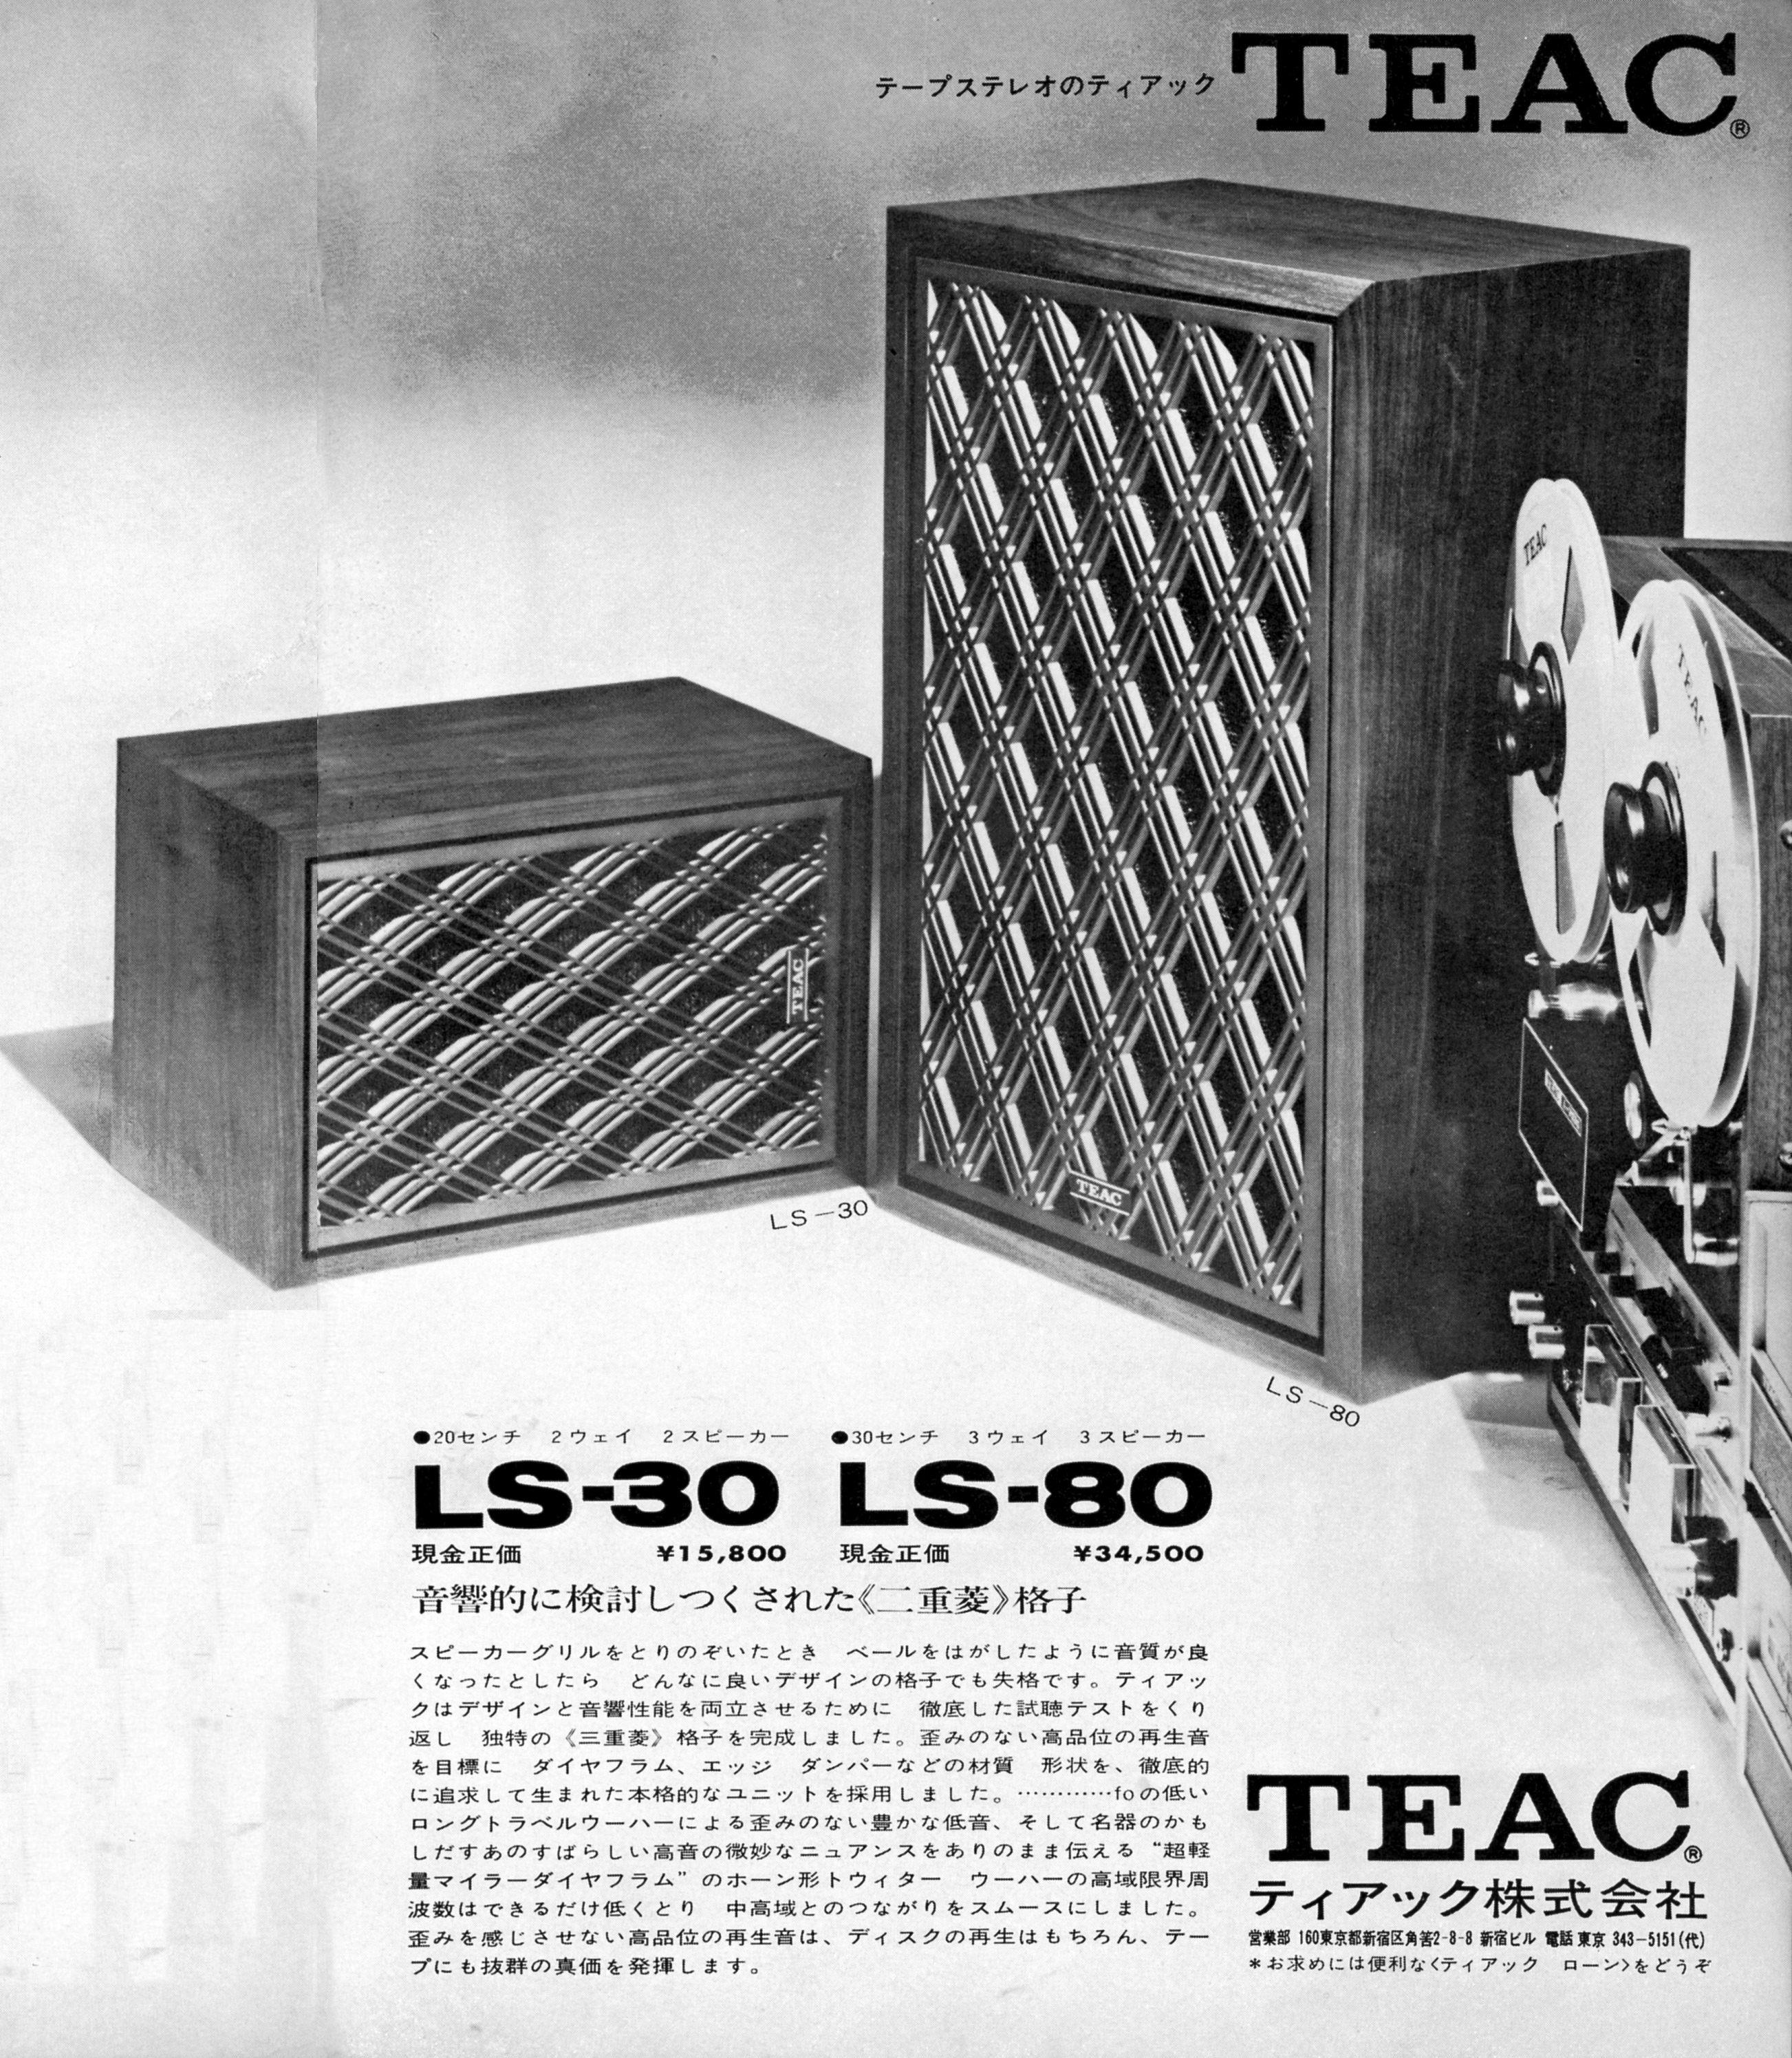 Teac LS-30-80-Werbung 1969.jpg